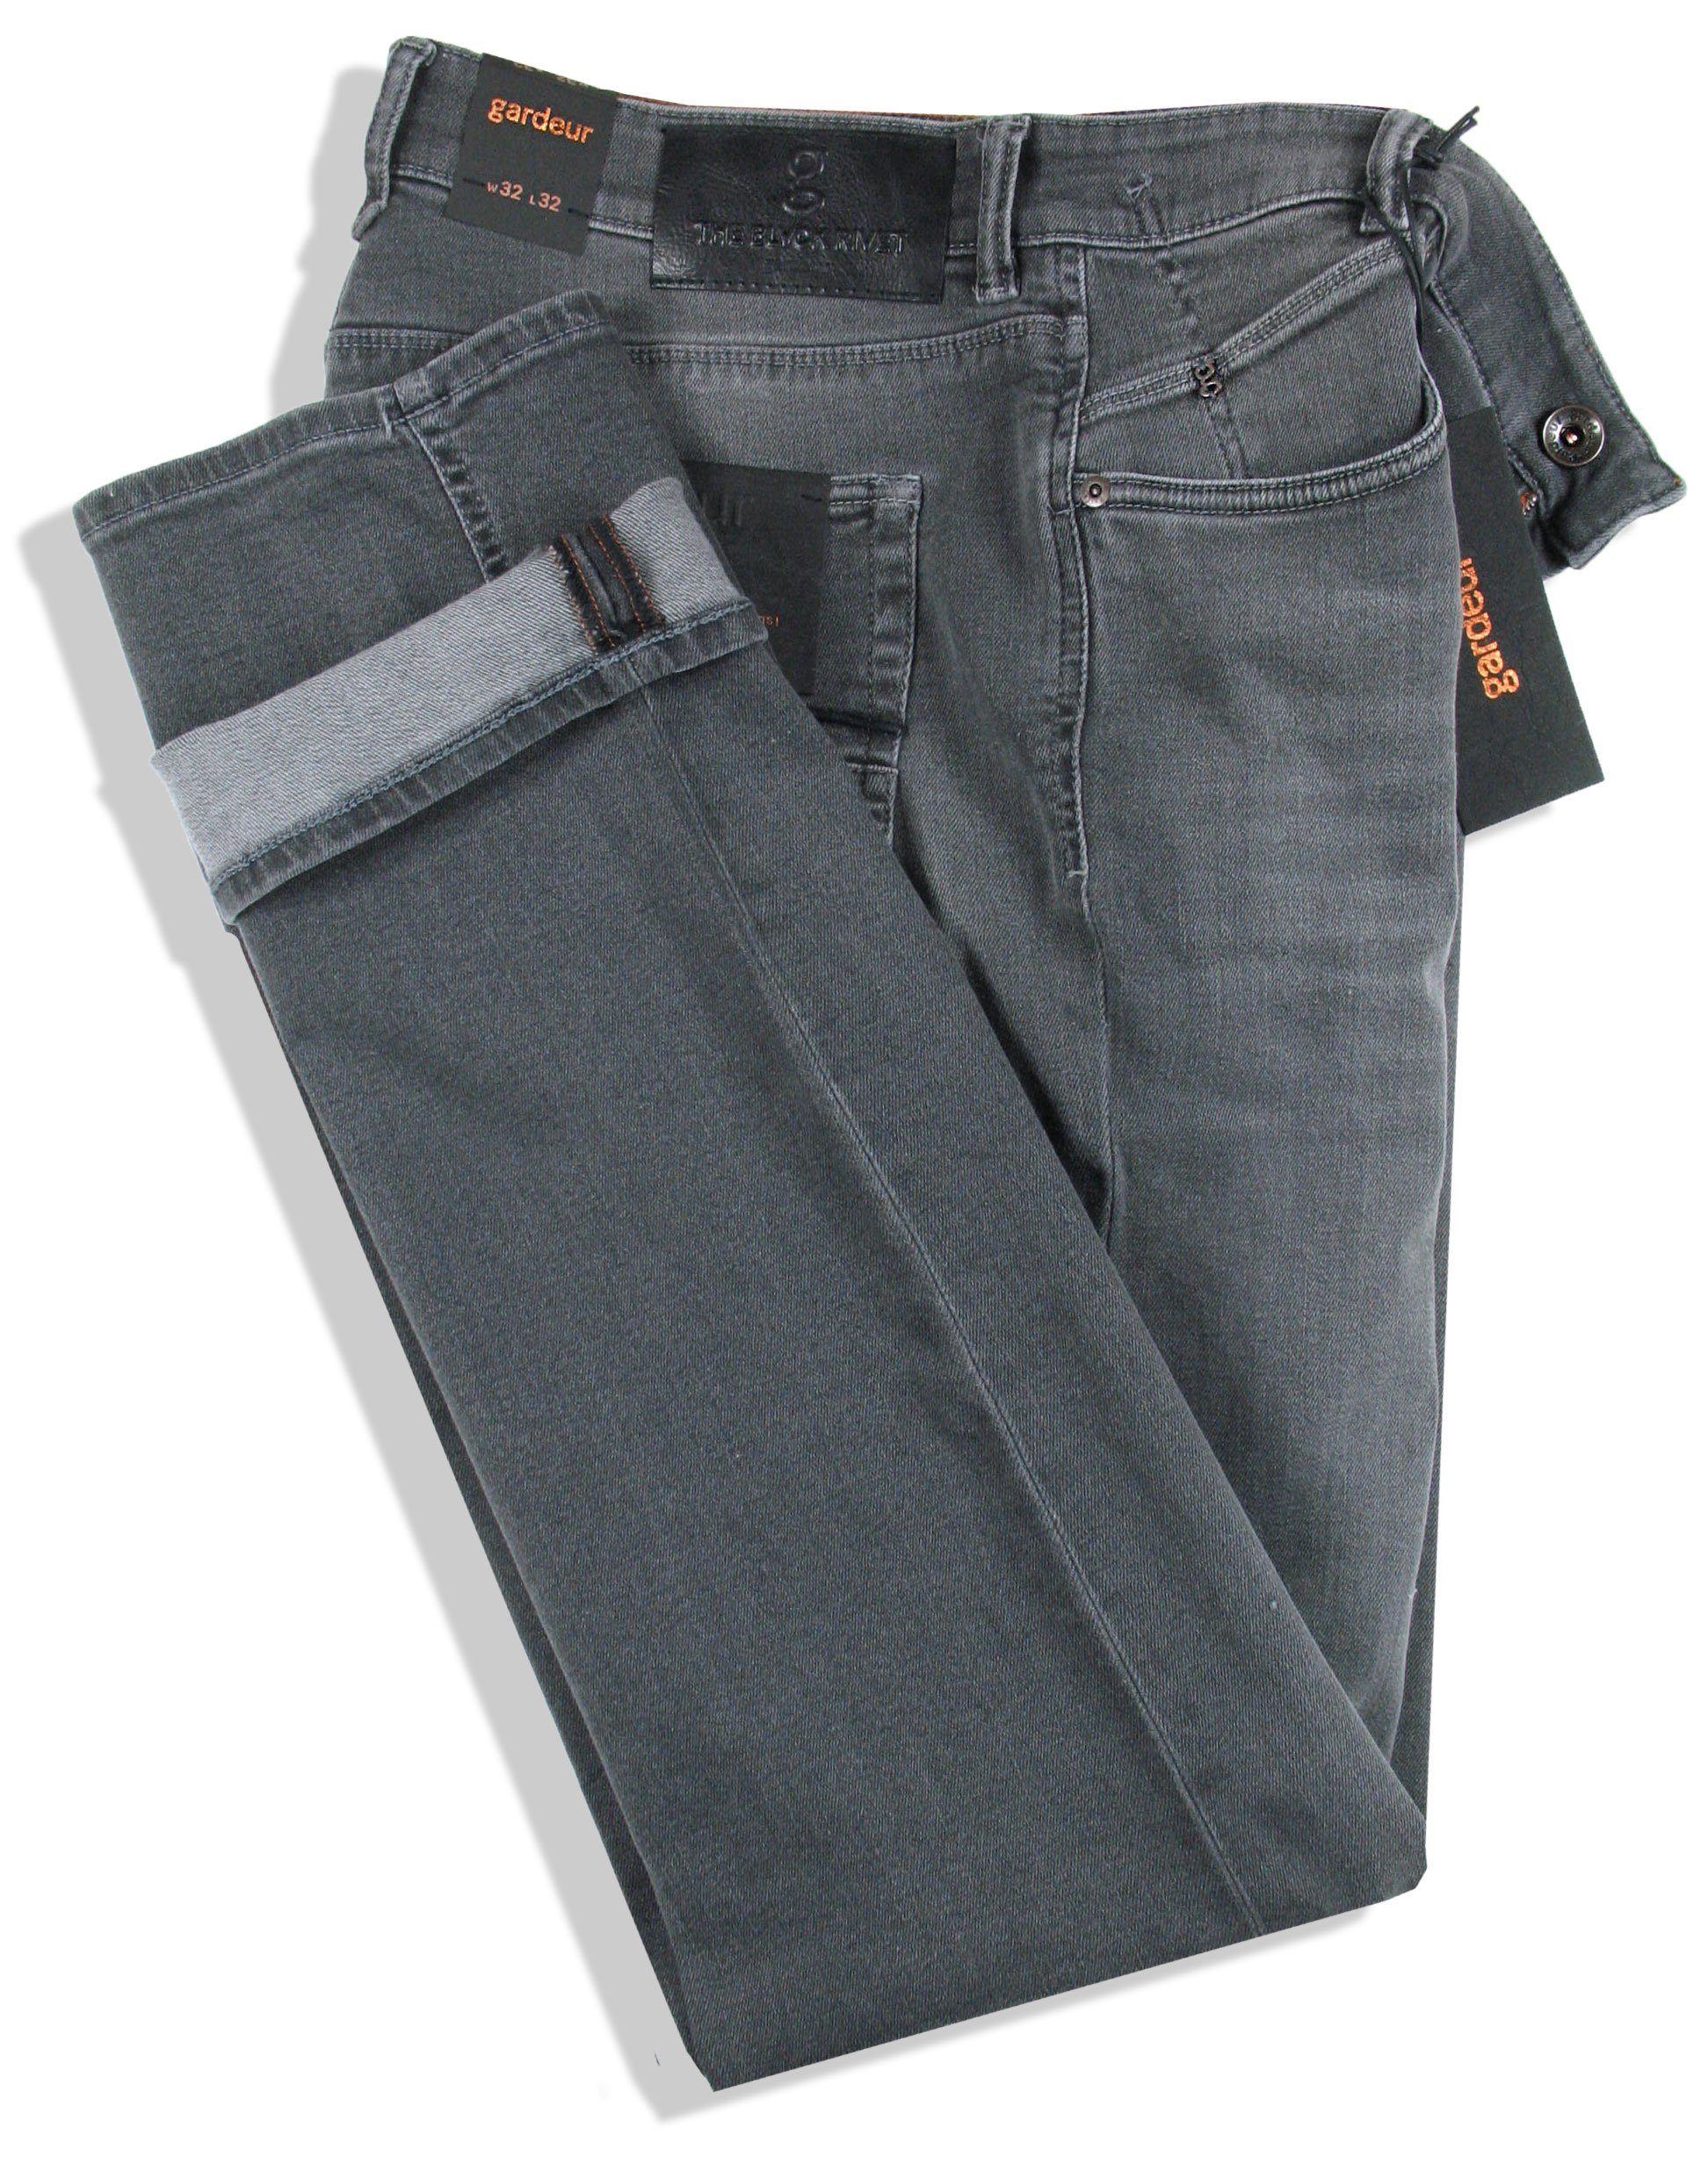 Herren Jeans Atelier GARDEUR 5-Pocket-Jeans Bennet Black Rivet Edition